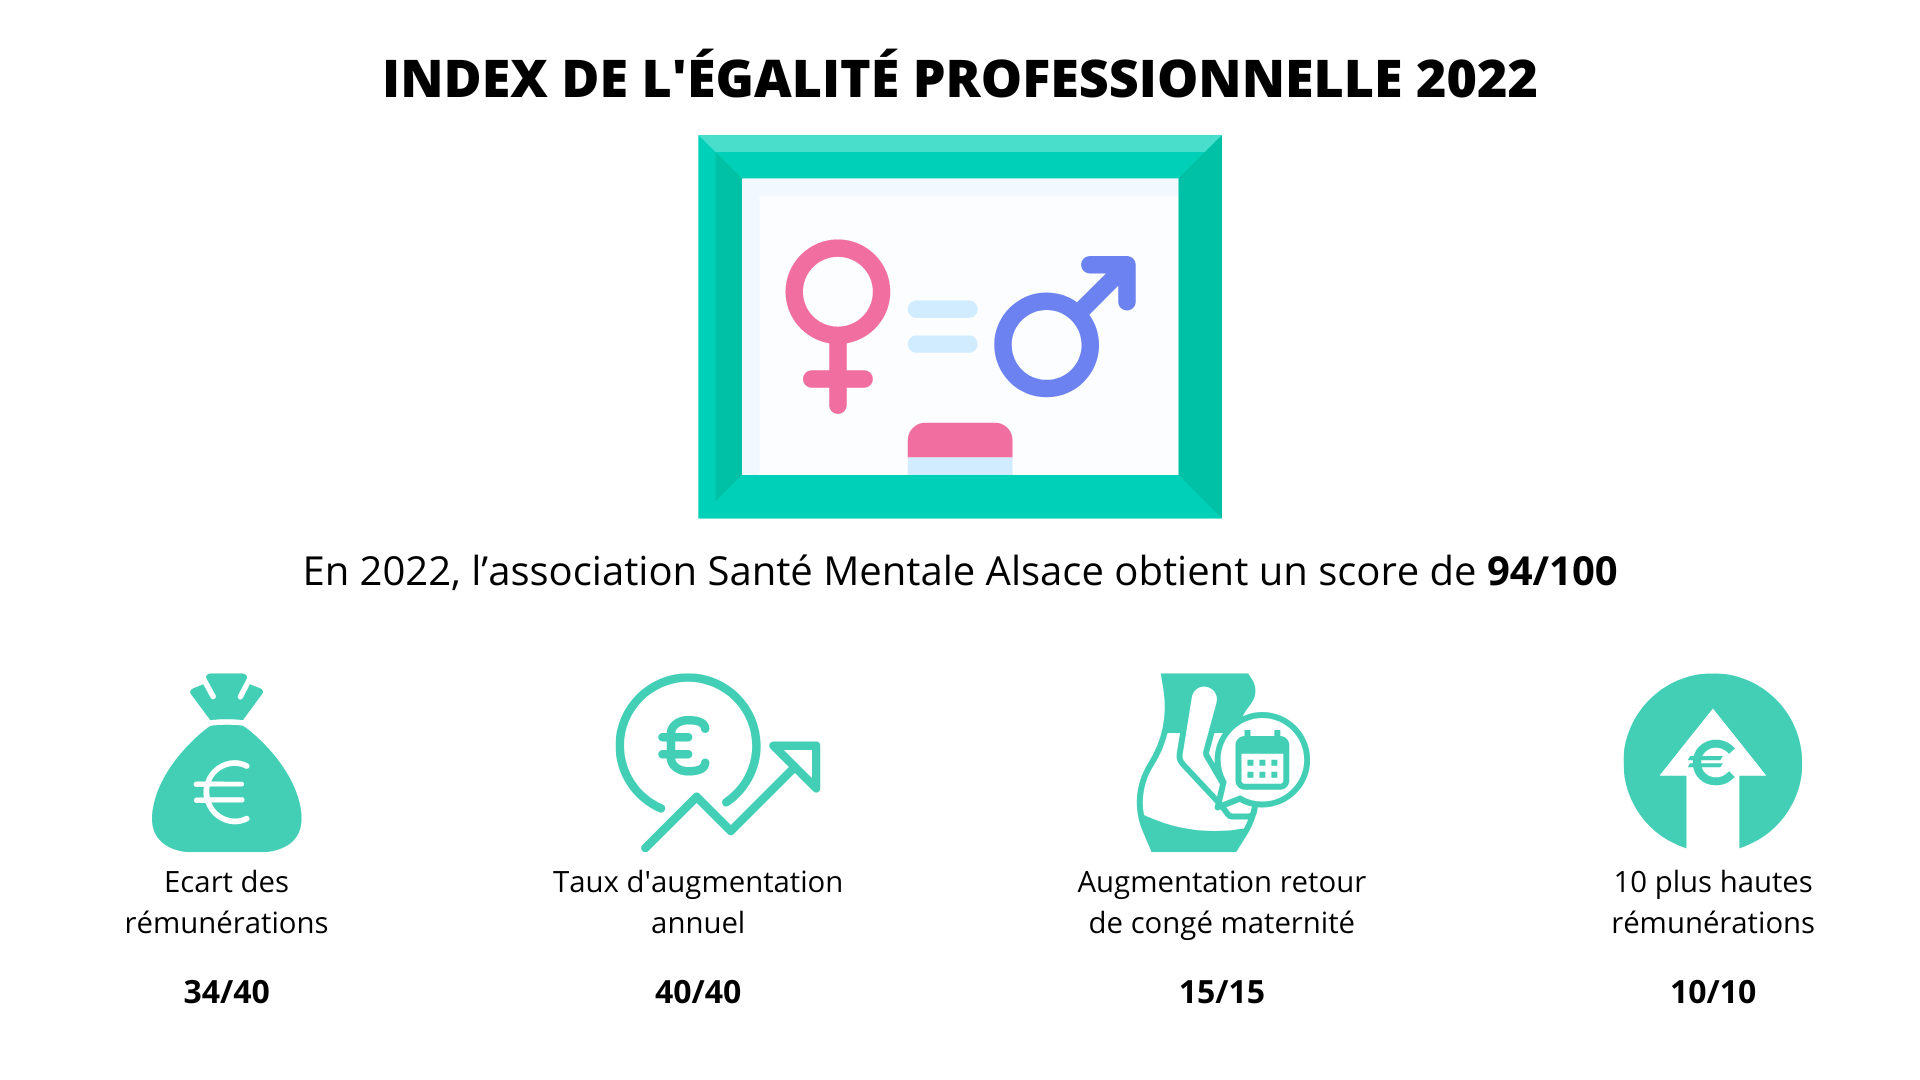 INDEX DE LEGALITE PROFESSIONNELLE 2022